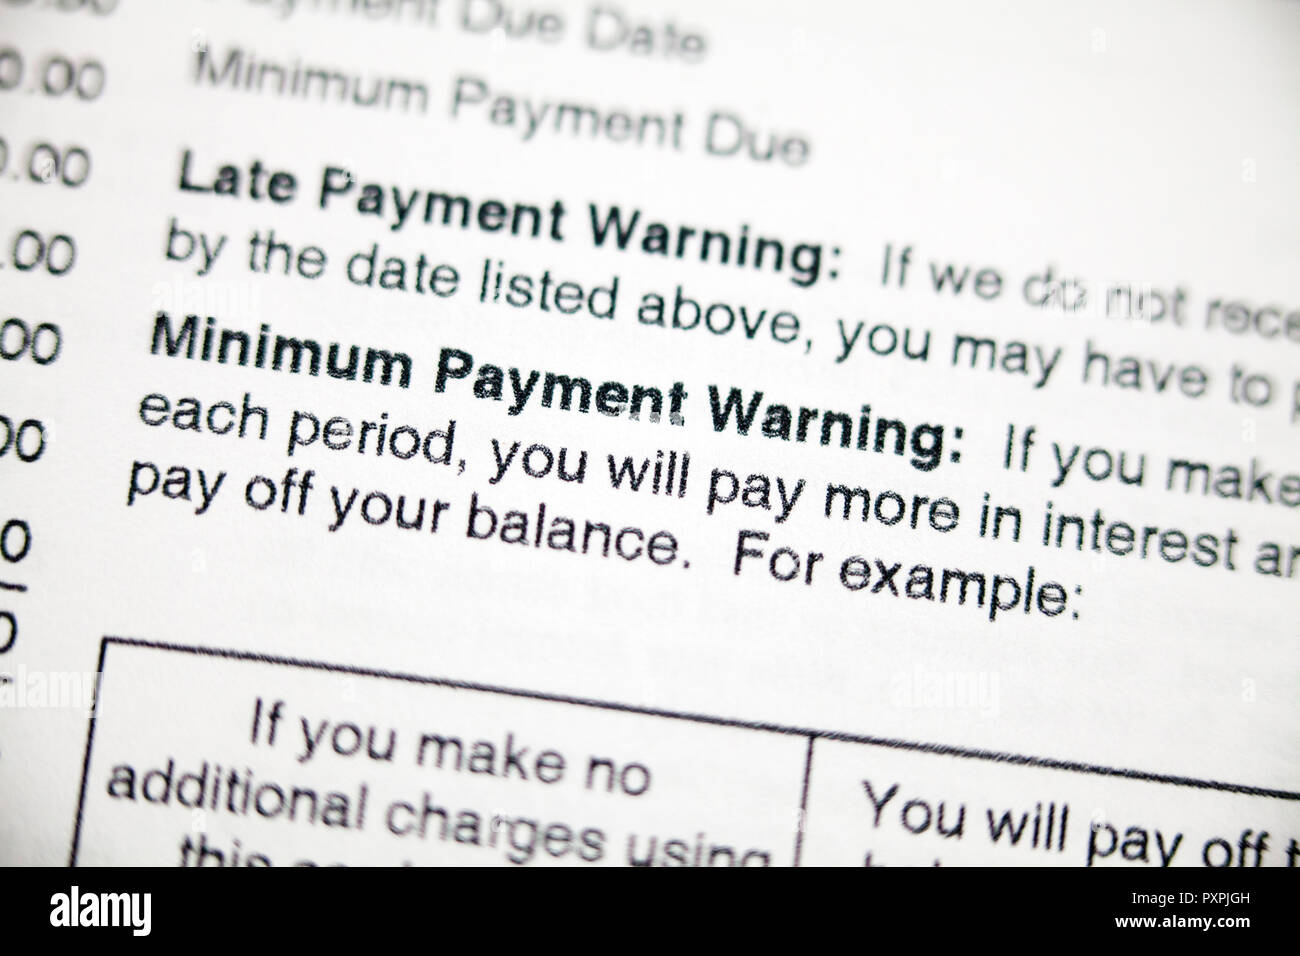 El pago tardío de advertencia y aviso de pago mínimo en la tarjeta de crédito - EE.UU. Foto de stock